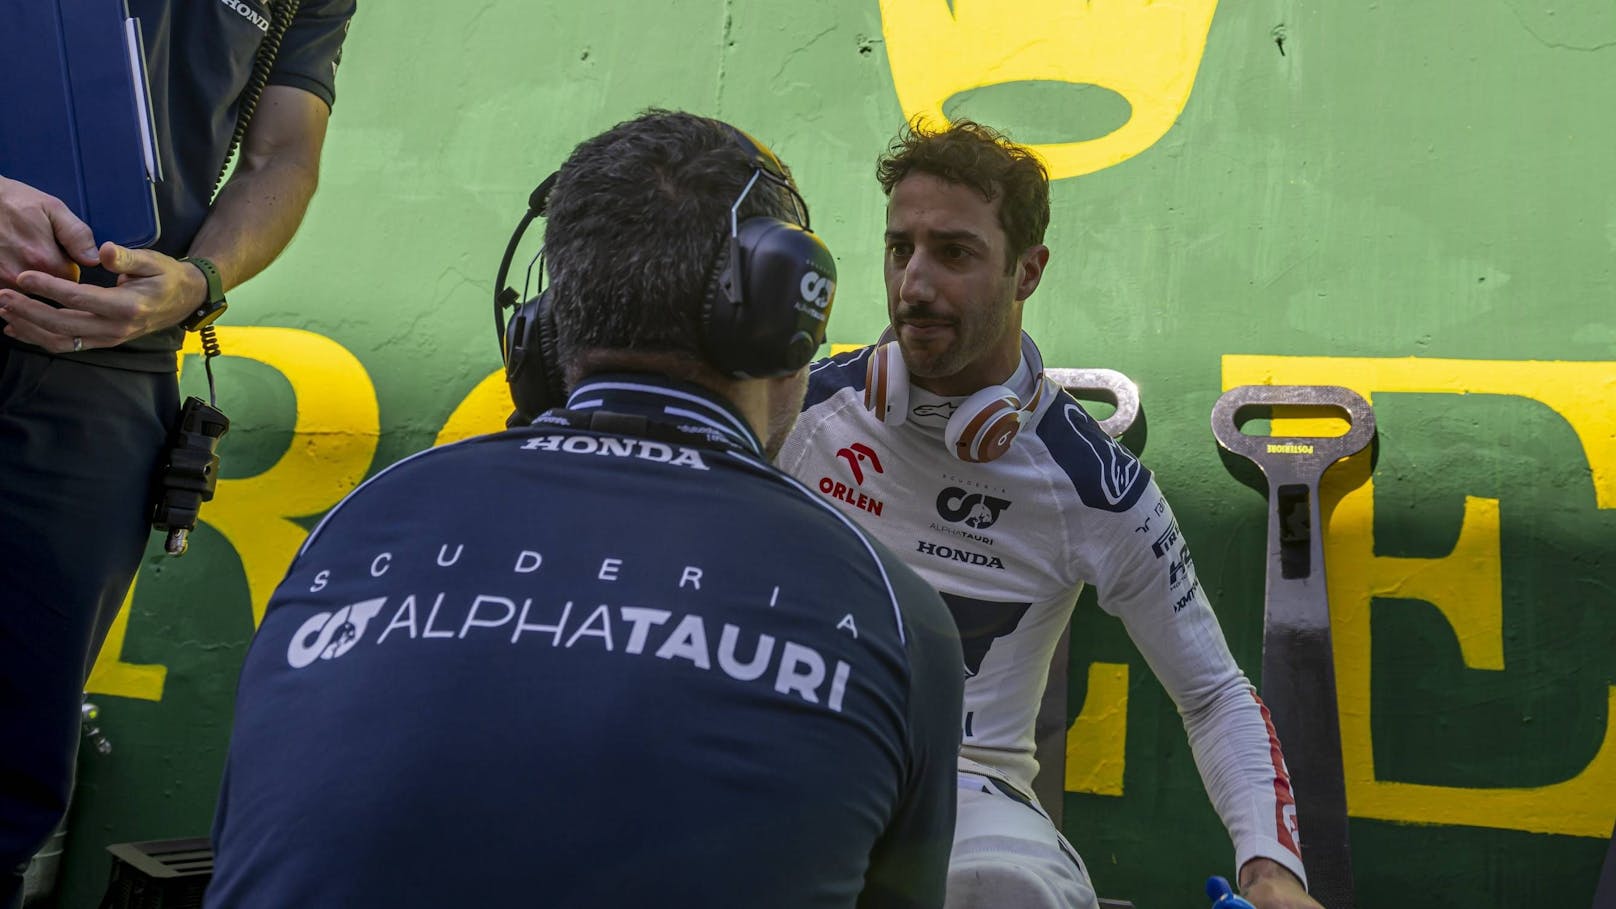 F1-Star sauer: "Kein echtes Rennen fahren lassen"